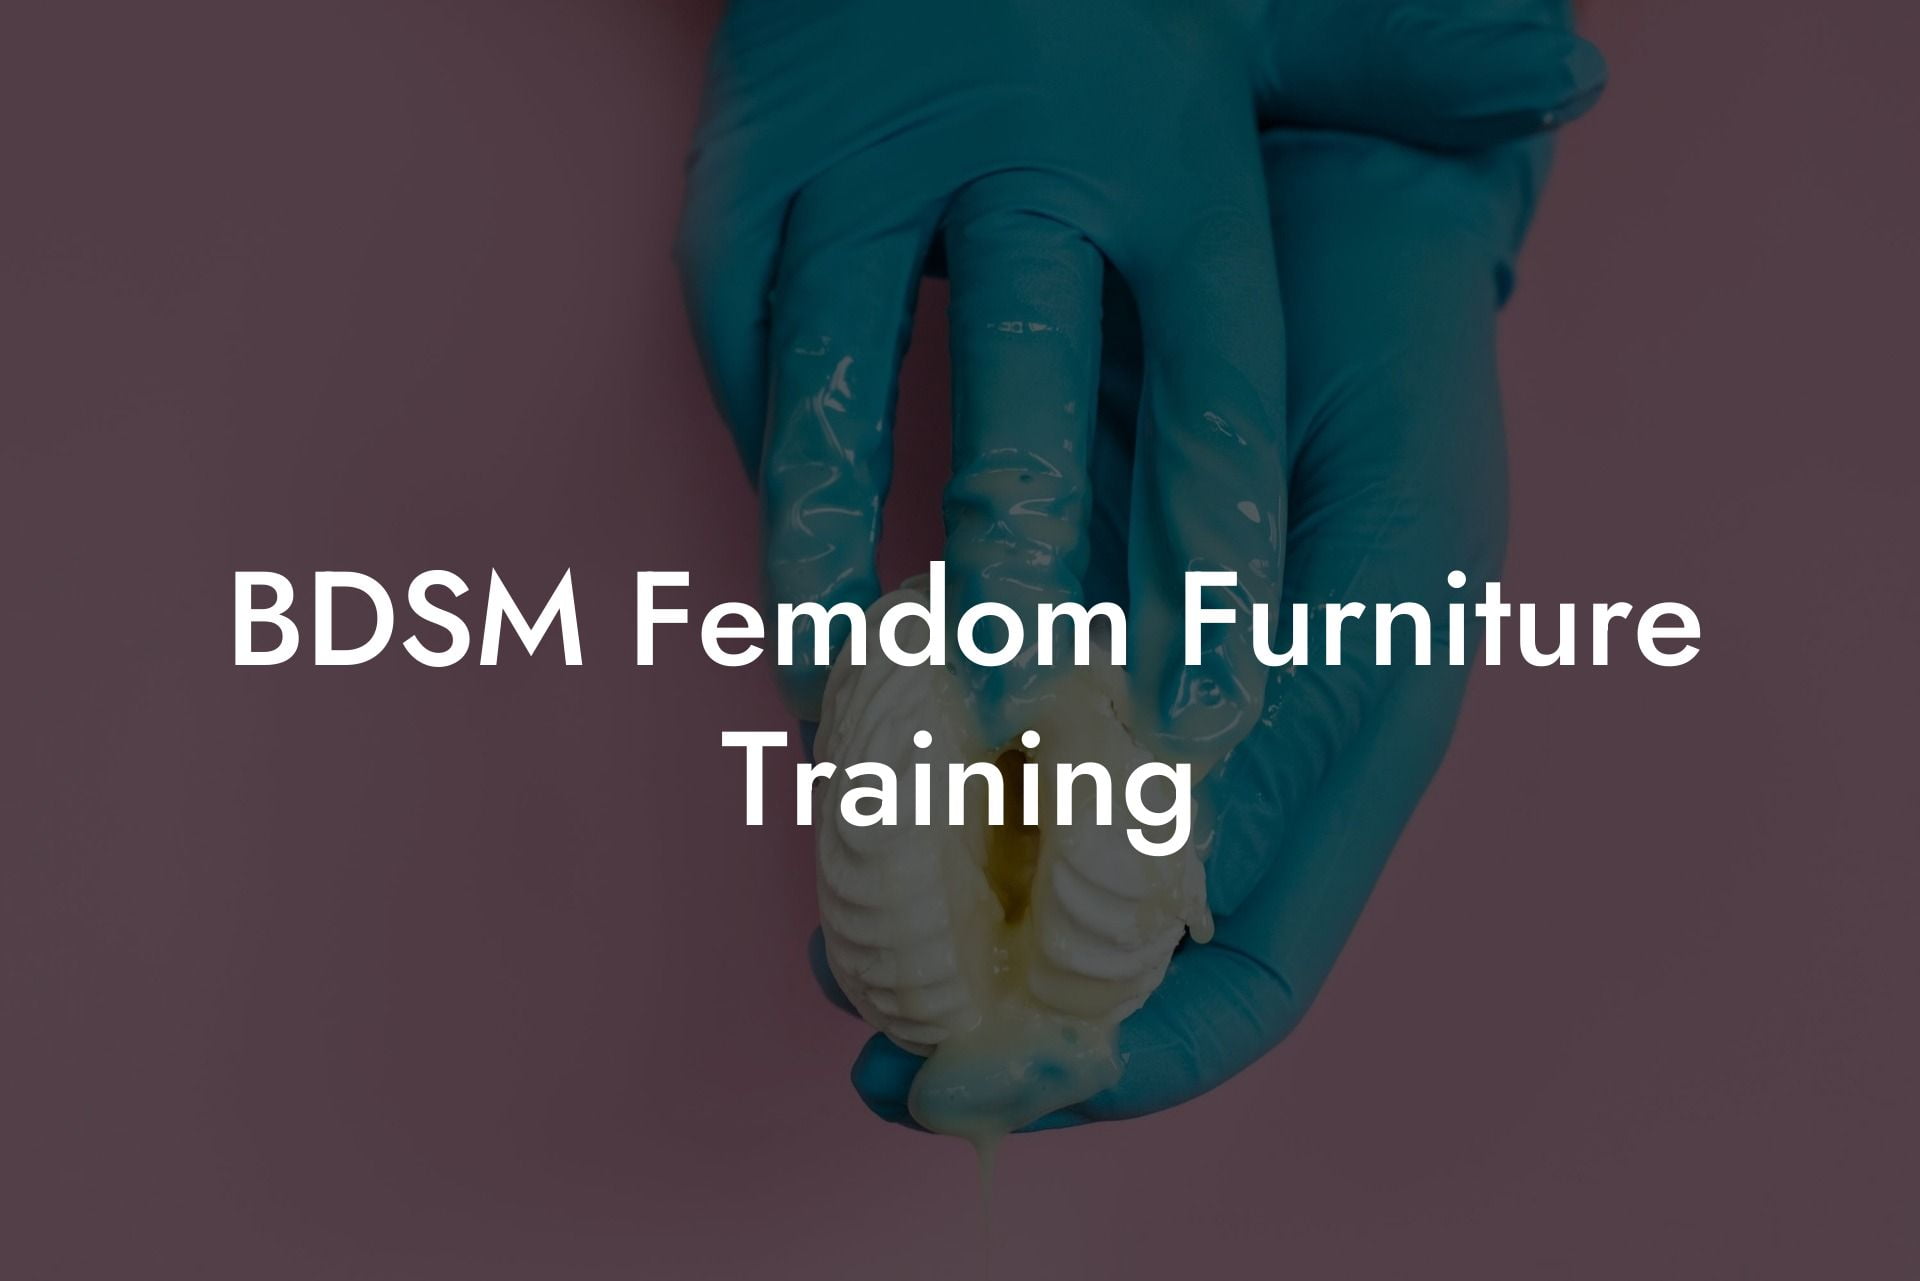 BDSM Femdom Furniture Training